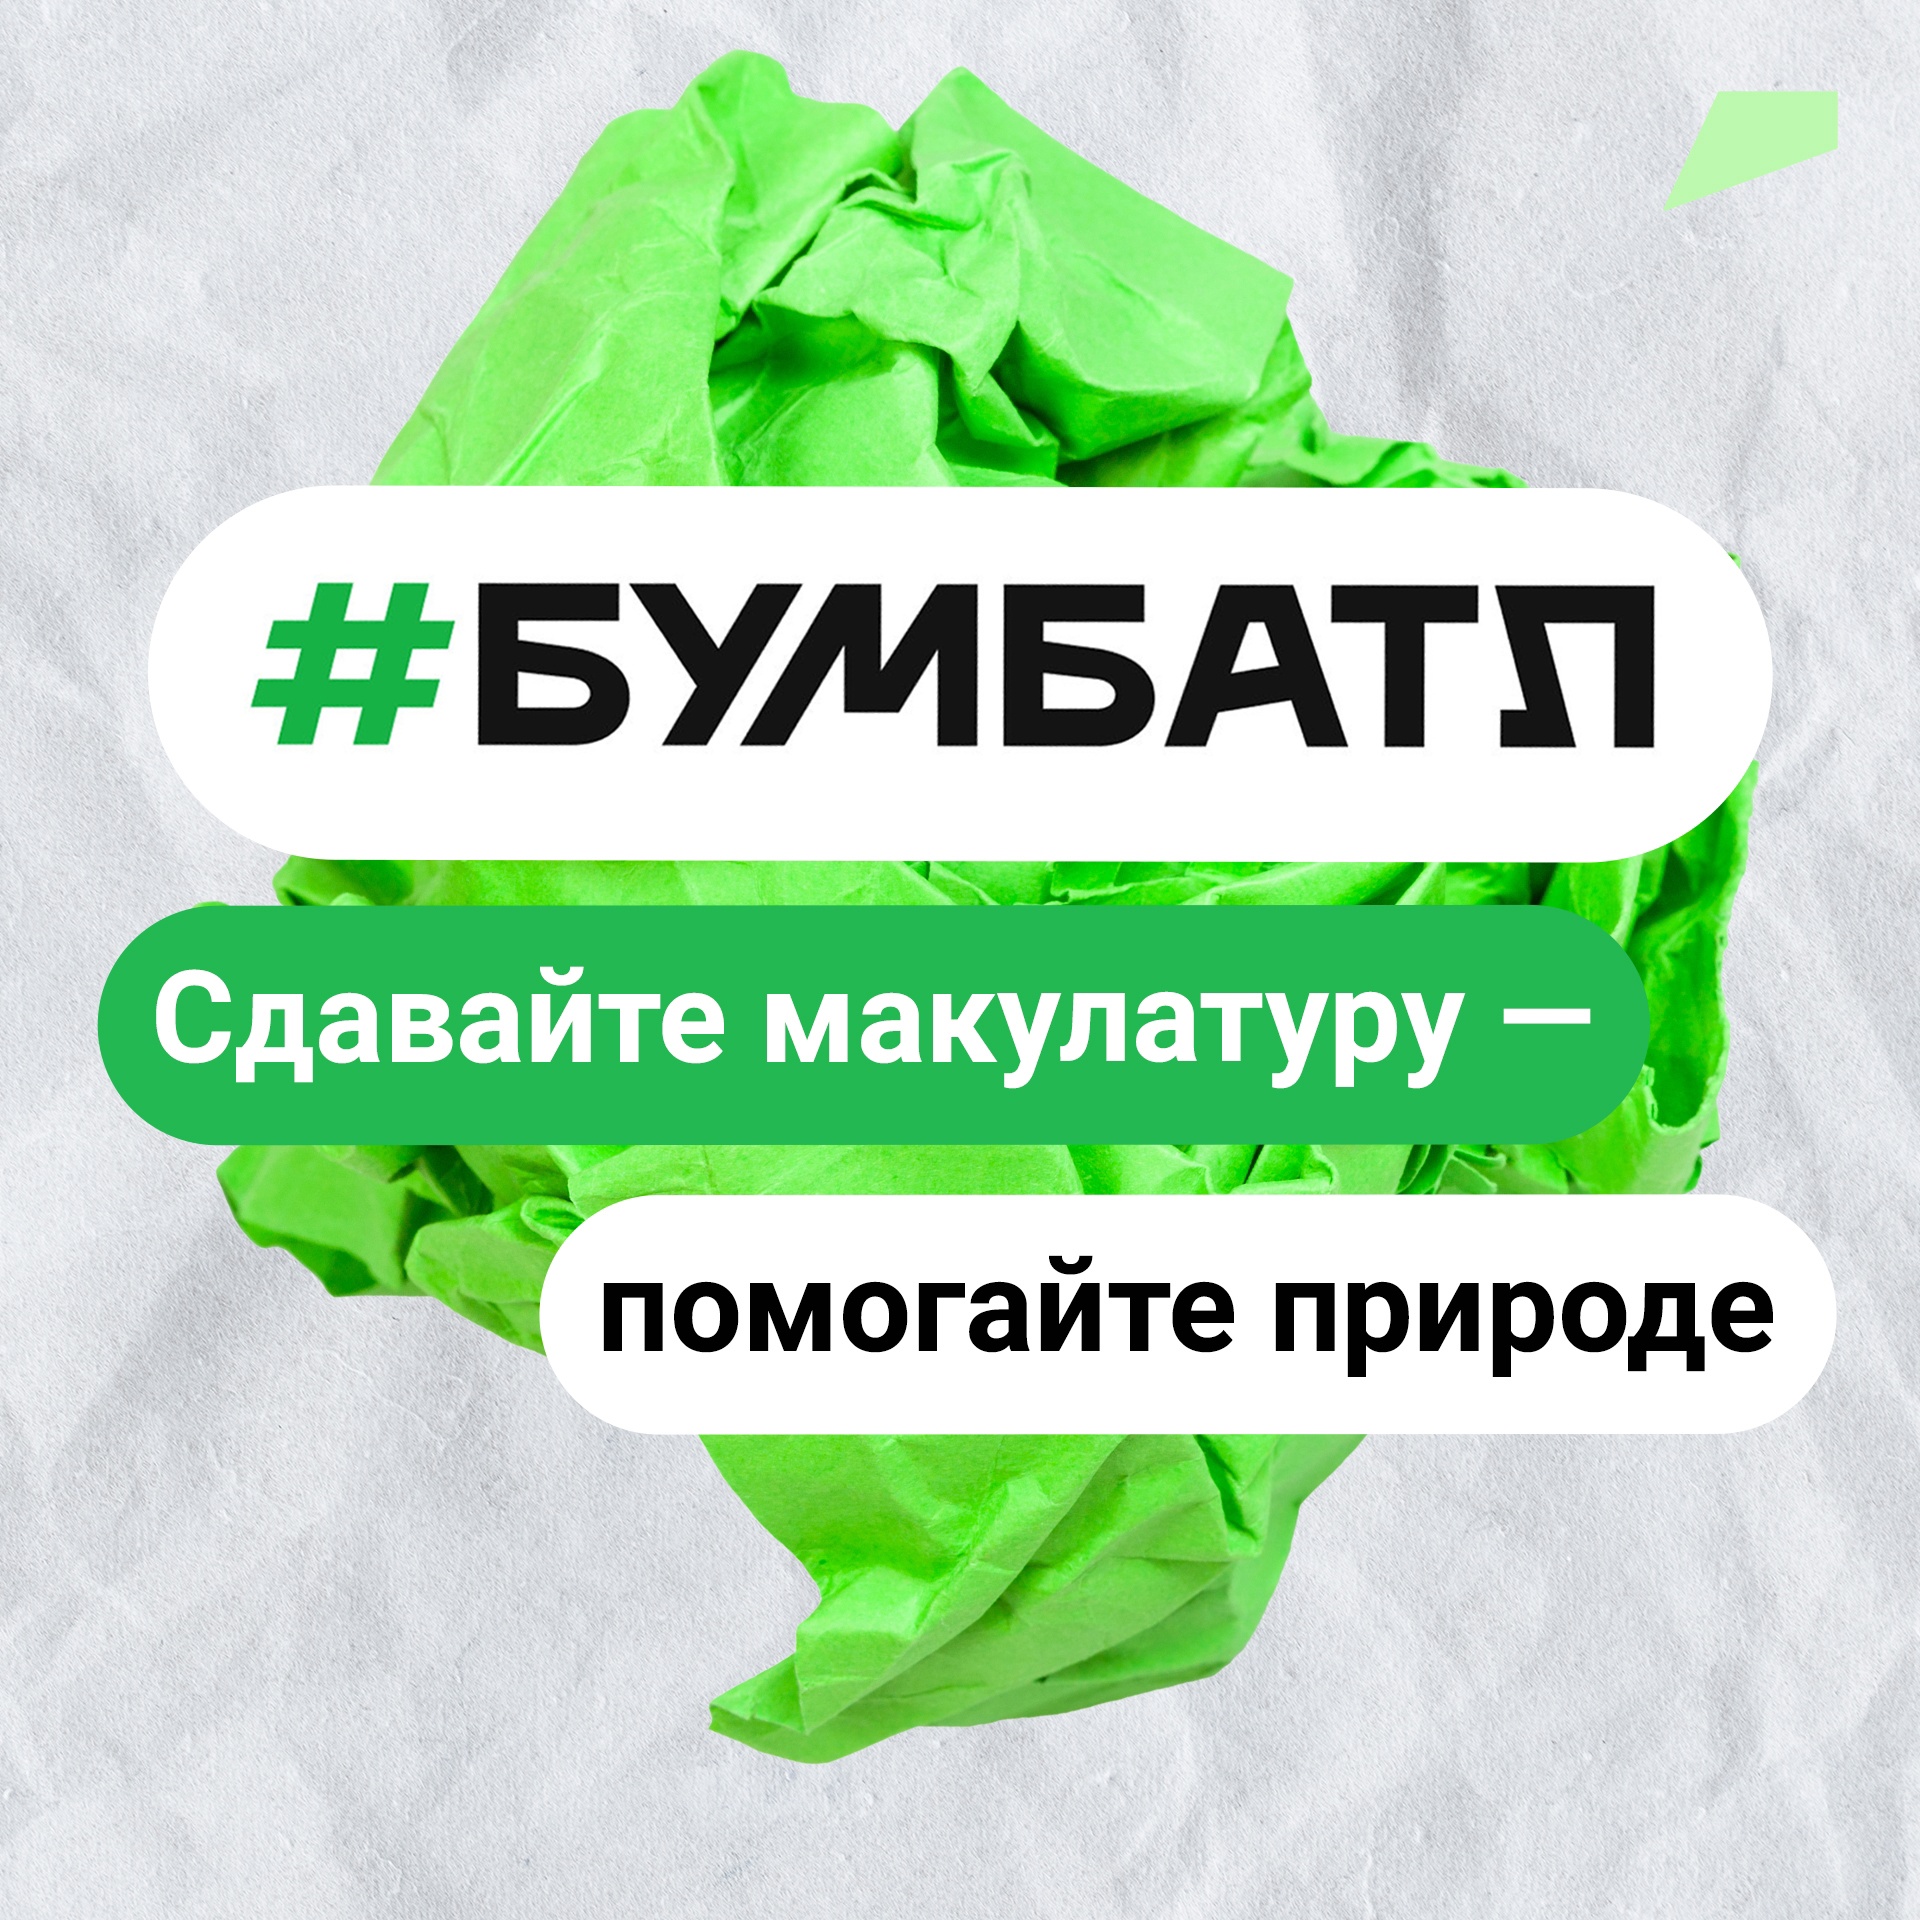 К Всемирному дню без бумаги Кировская область собрала в рамках акции «БумаБатл» 14 тонн макулатуры.